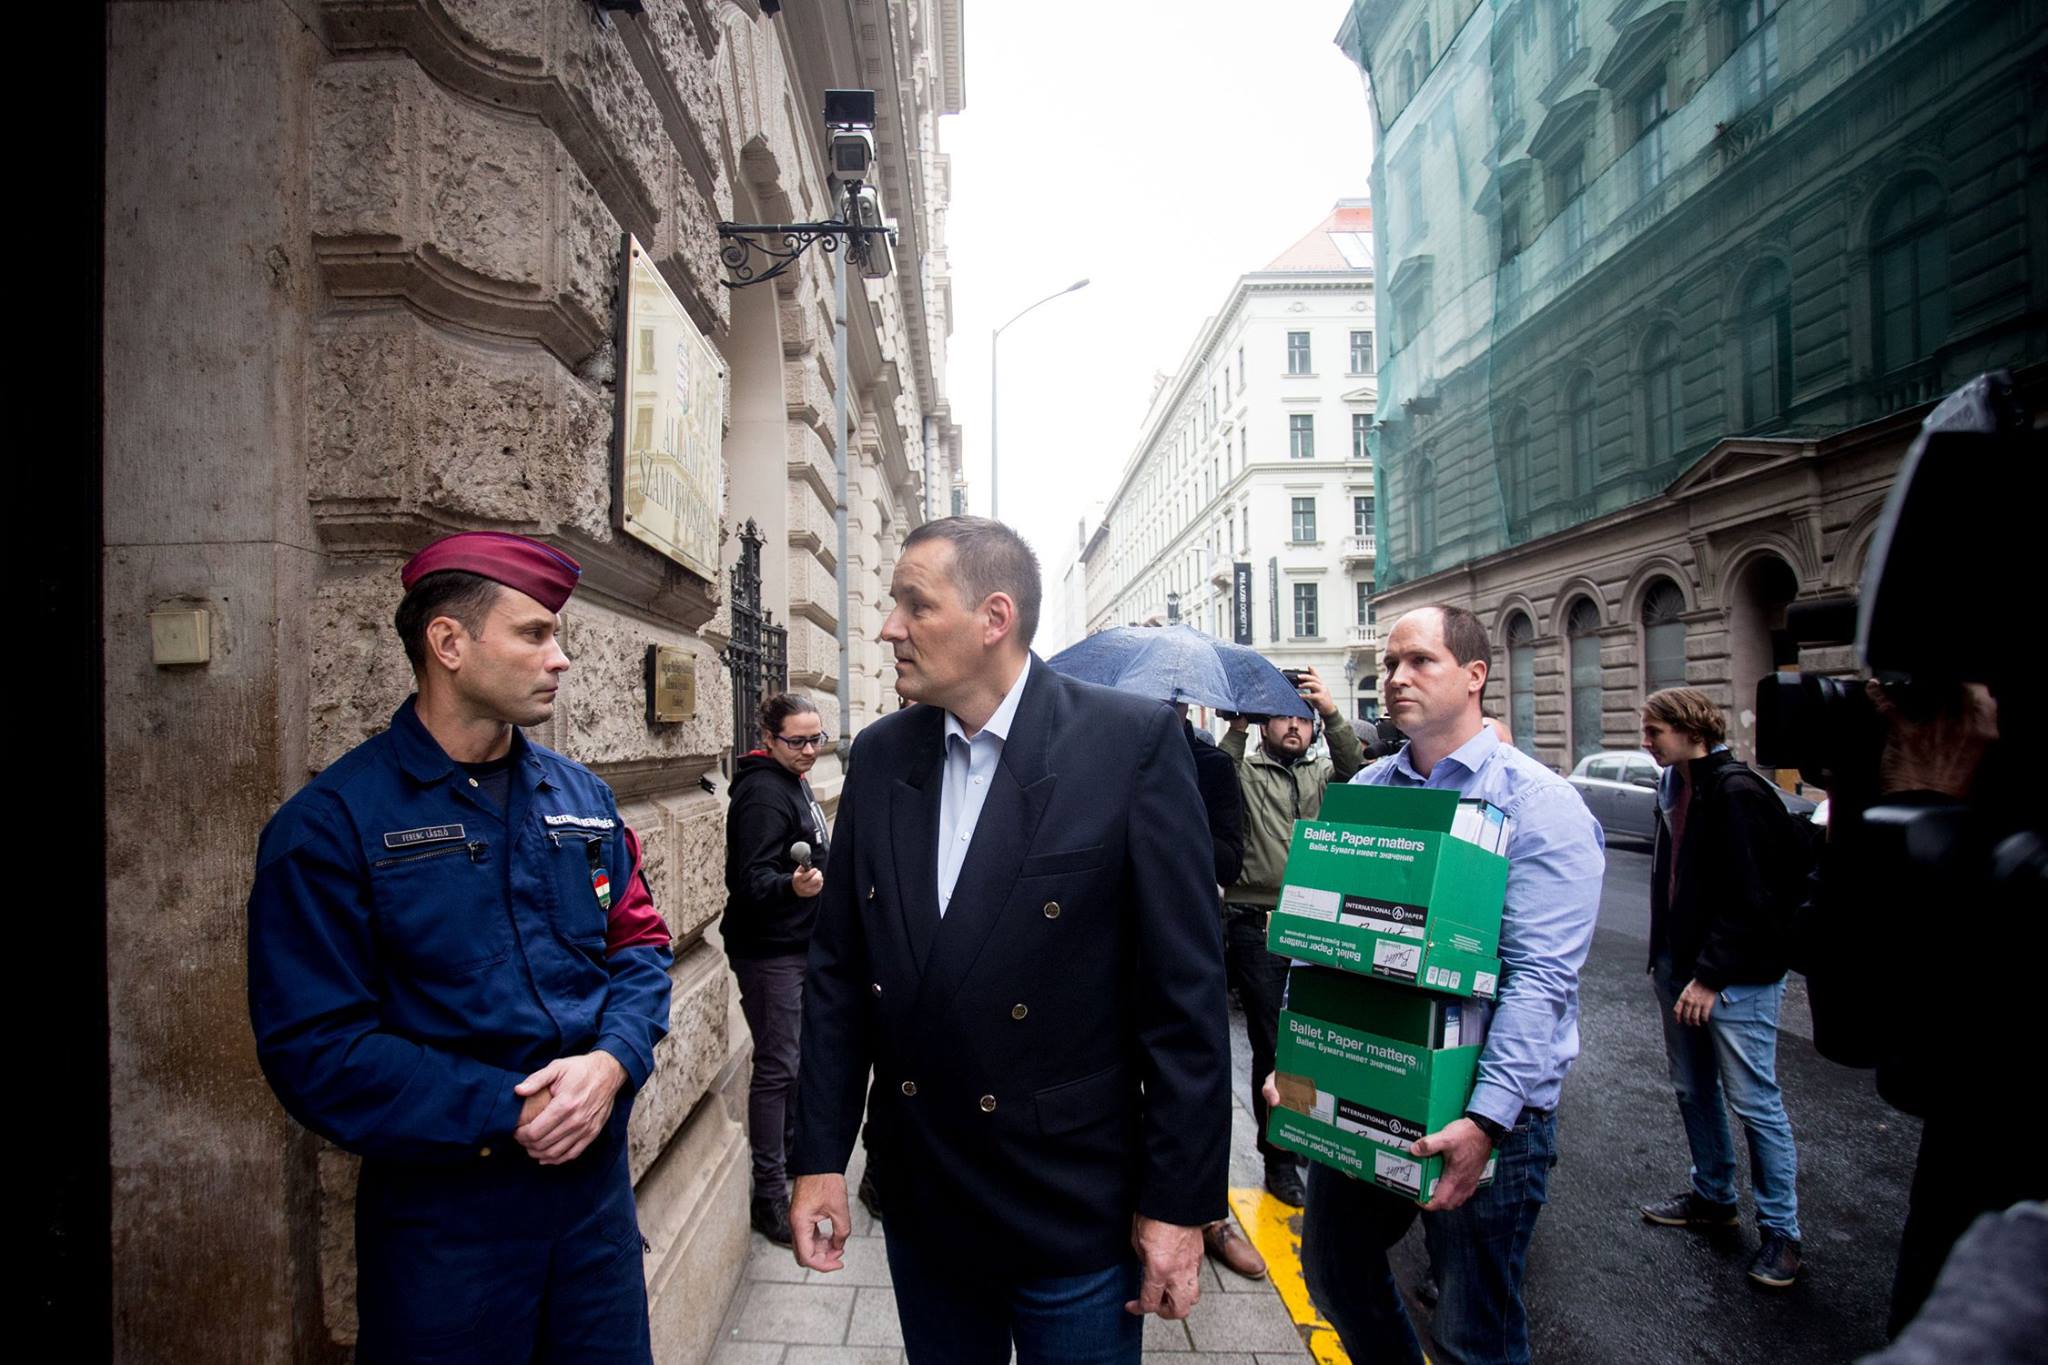 Miután feljelentették, a Jobbik át akarta adni az Állami Számvevőszéknek a kért iratokat, de azokat nem vették át